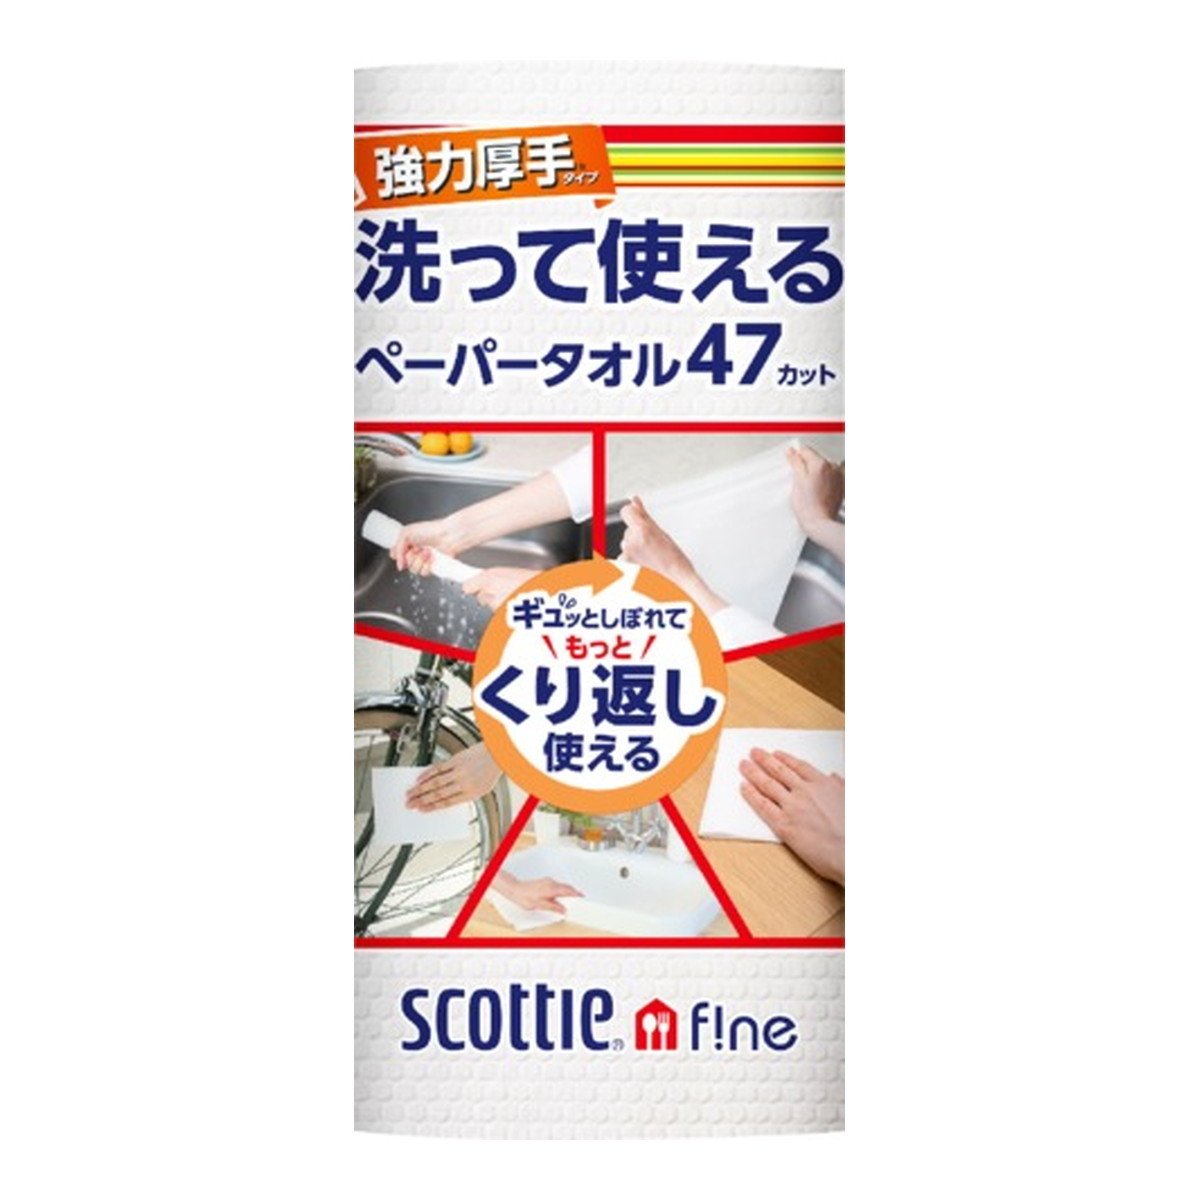 スコッティ スコッティ ファイン 洗って使えるペーパータオル 強力厚手 47カット1ロール×3個 スコッティ ファイン キッチンペーパータオルの商品画像